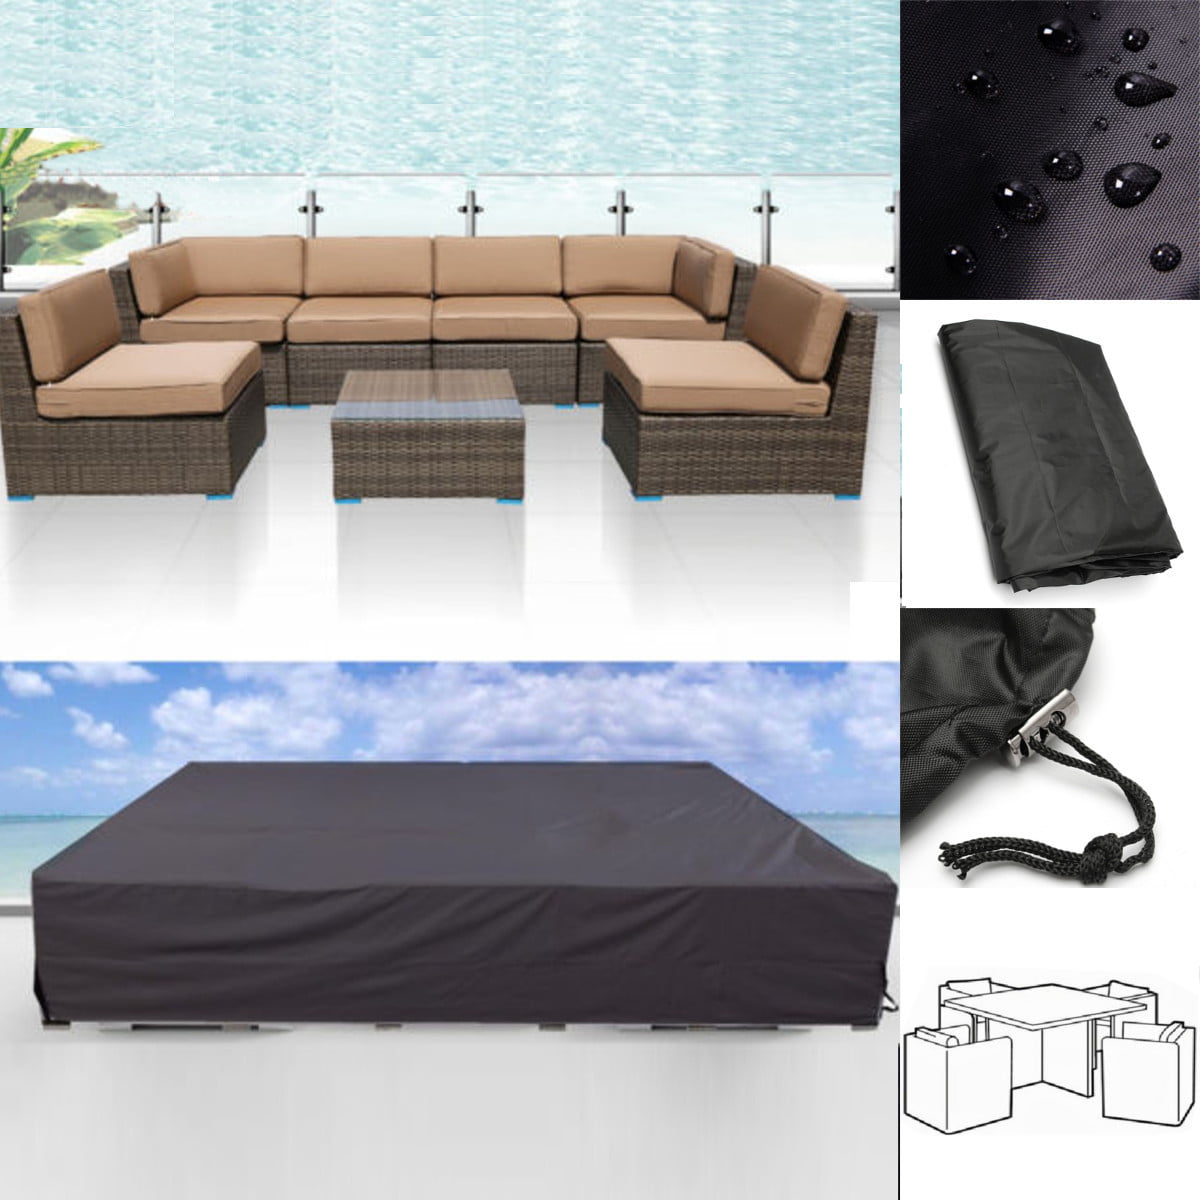 124 Waterproof Outdoor Furniture, Outdoor Sofa Cover Waterproof Canada